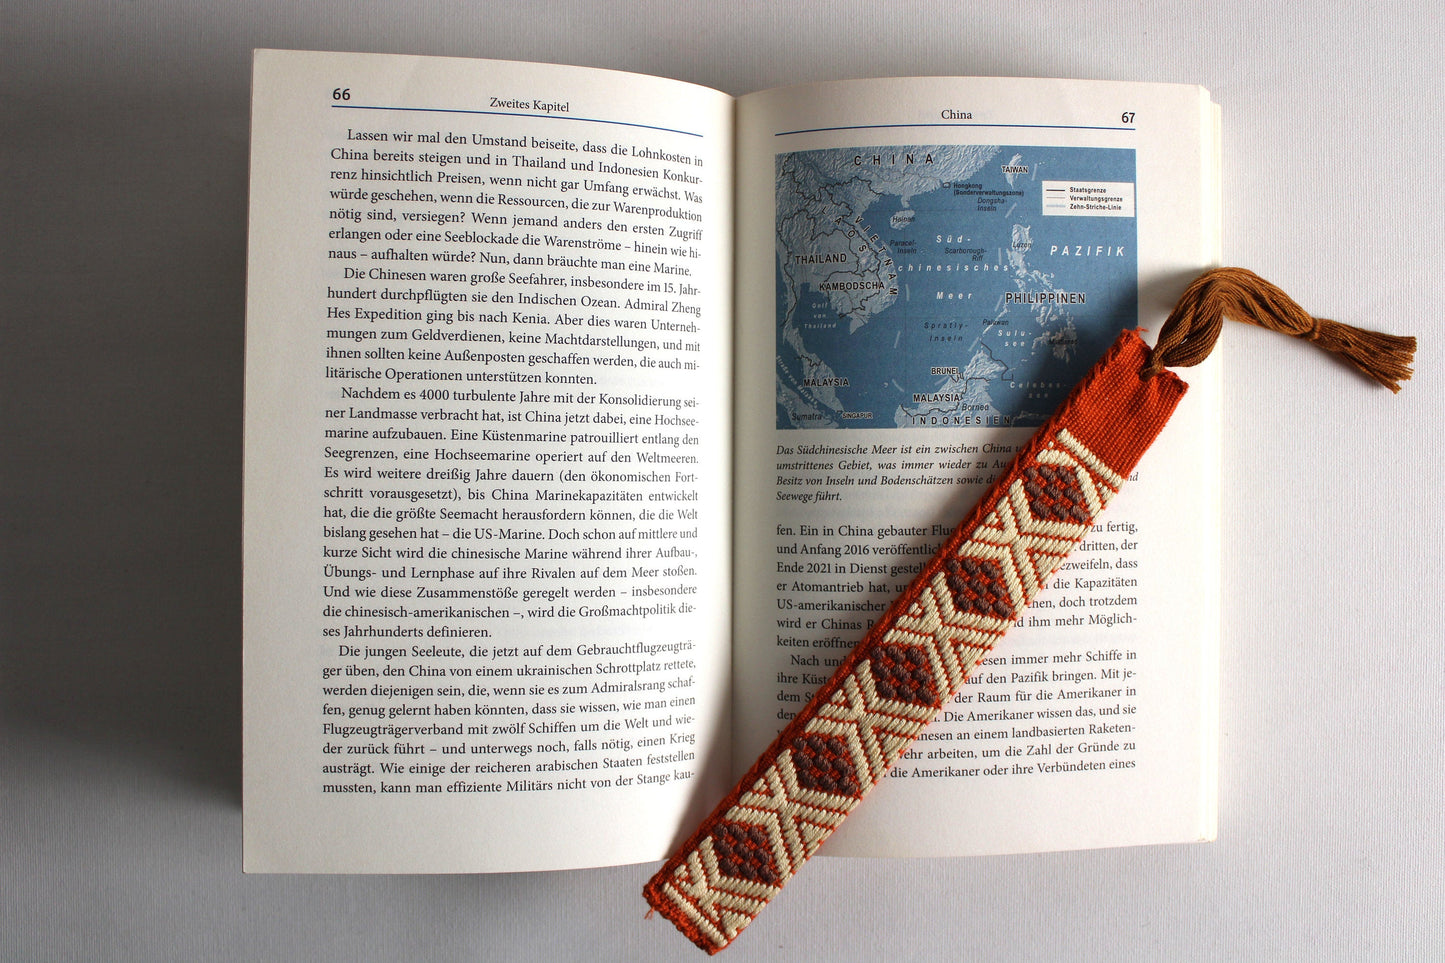 Lesezeichen handgemacht aus Mexiko Bookmark gewebt aus Baumwolle, boho Style mexikanisches Muster Azteken, kleine Weihnachtsgeschenke